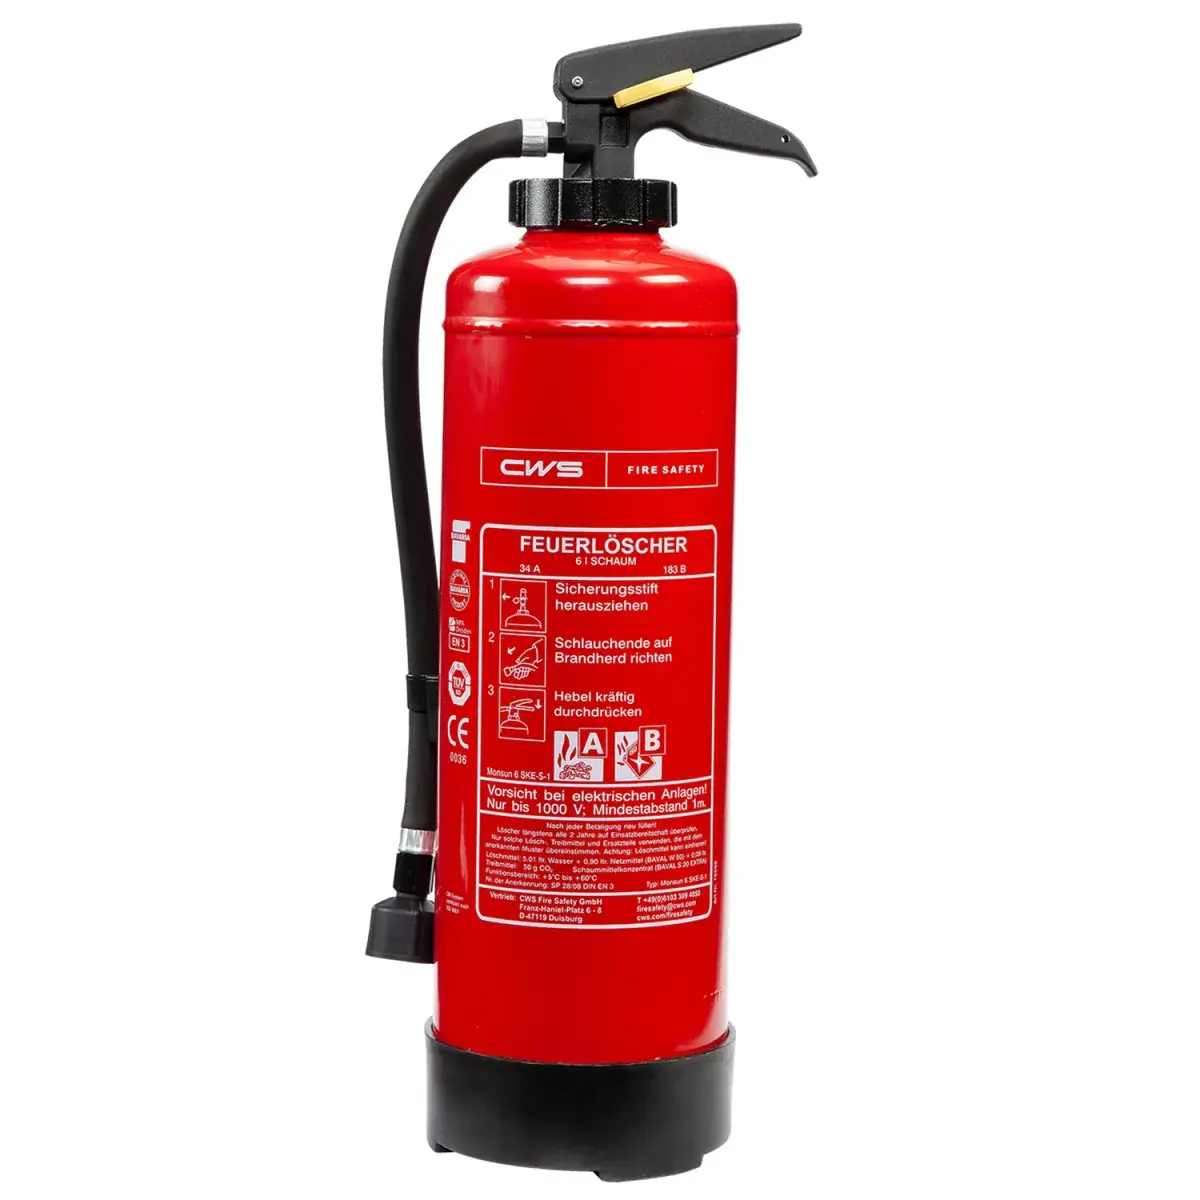 Schaumlöscher-Foam-Fire-Extinguisher-CWS Fire Safety